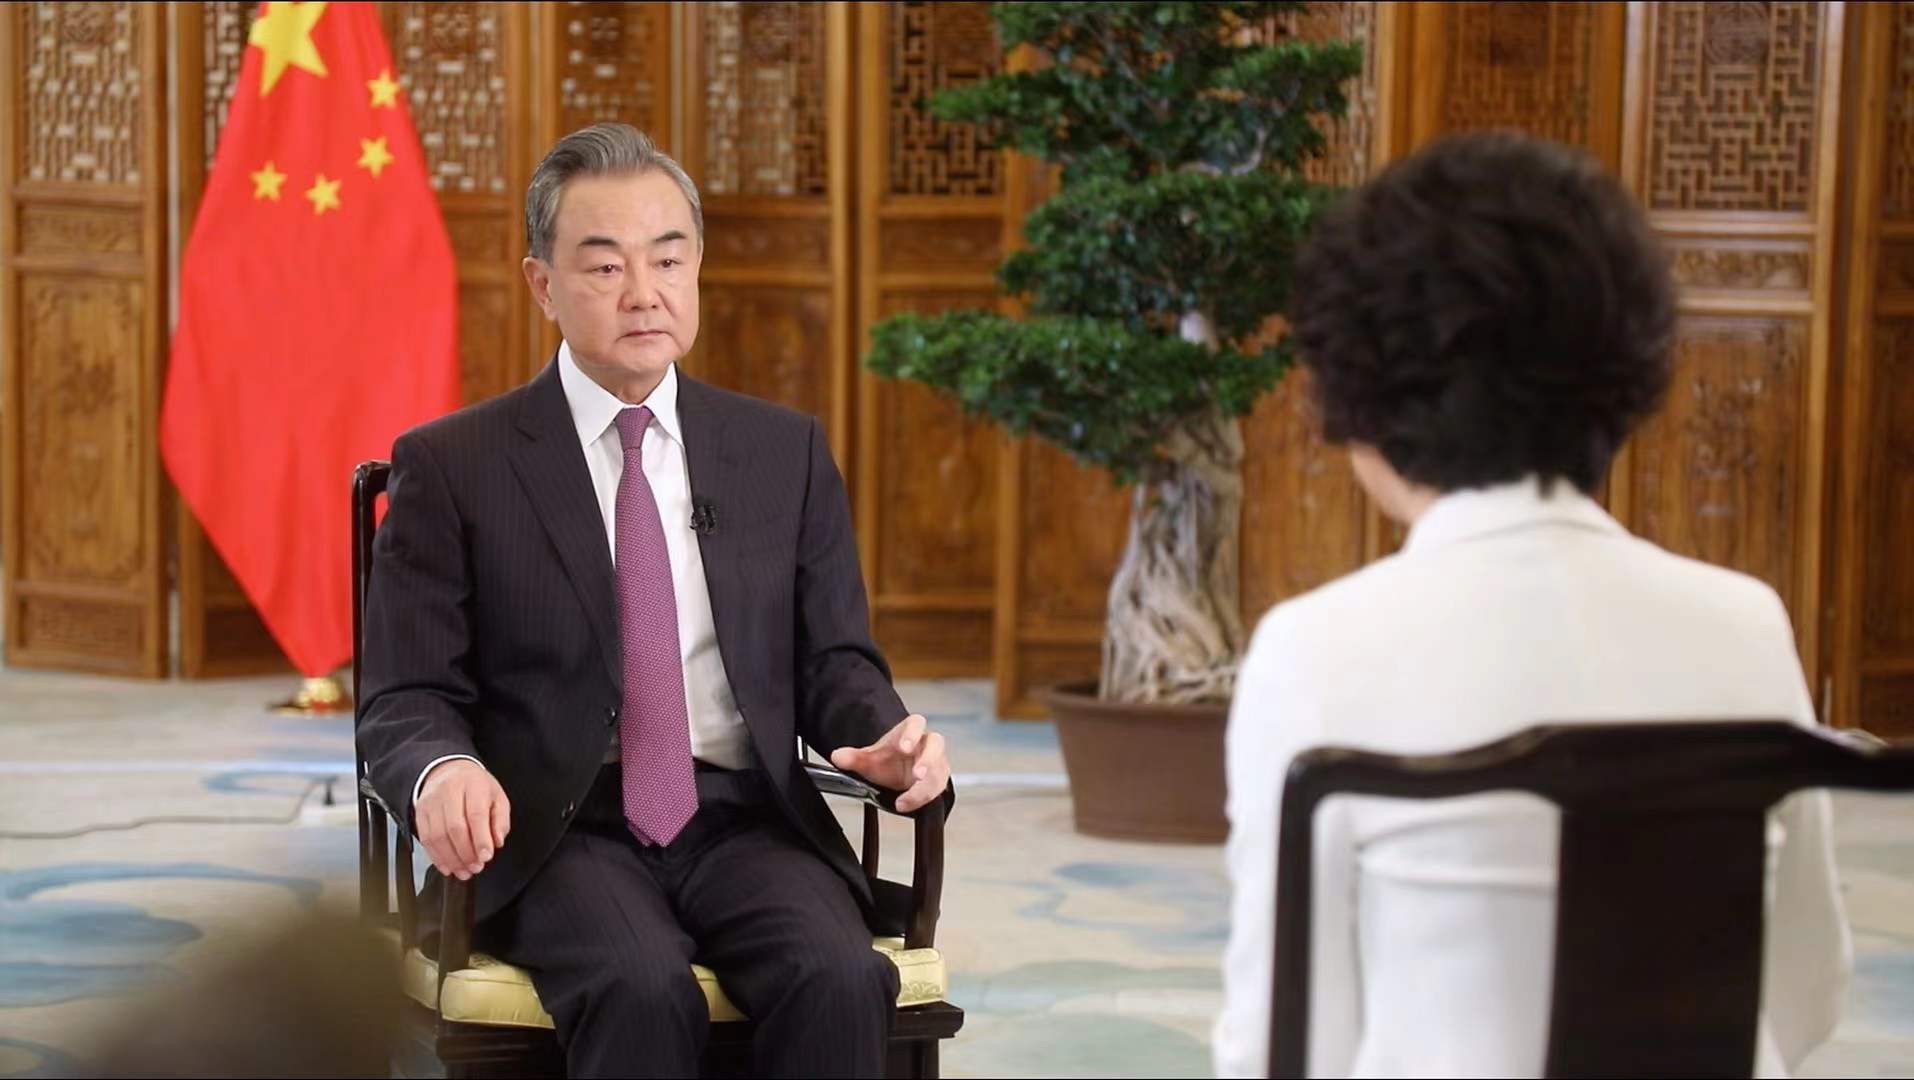 Ngoại trưởng Trung Quốc nói 'châu Á không cho phép bất kỳ quốc gia nào ngoài khu vực kích động đối đầu'. (Nguồn: CGTN)